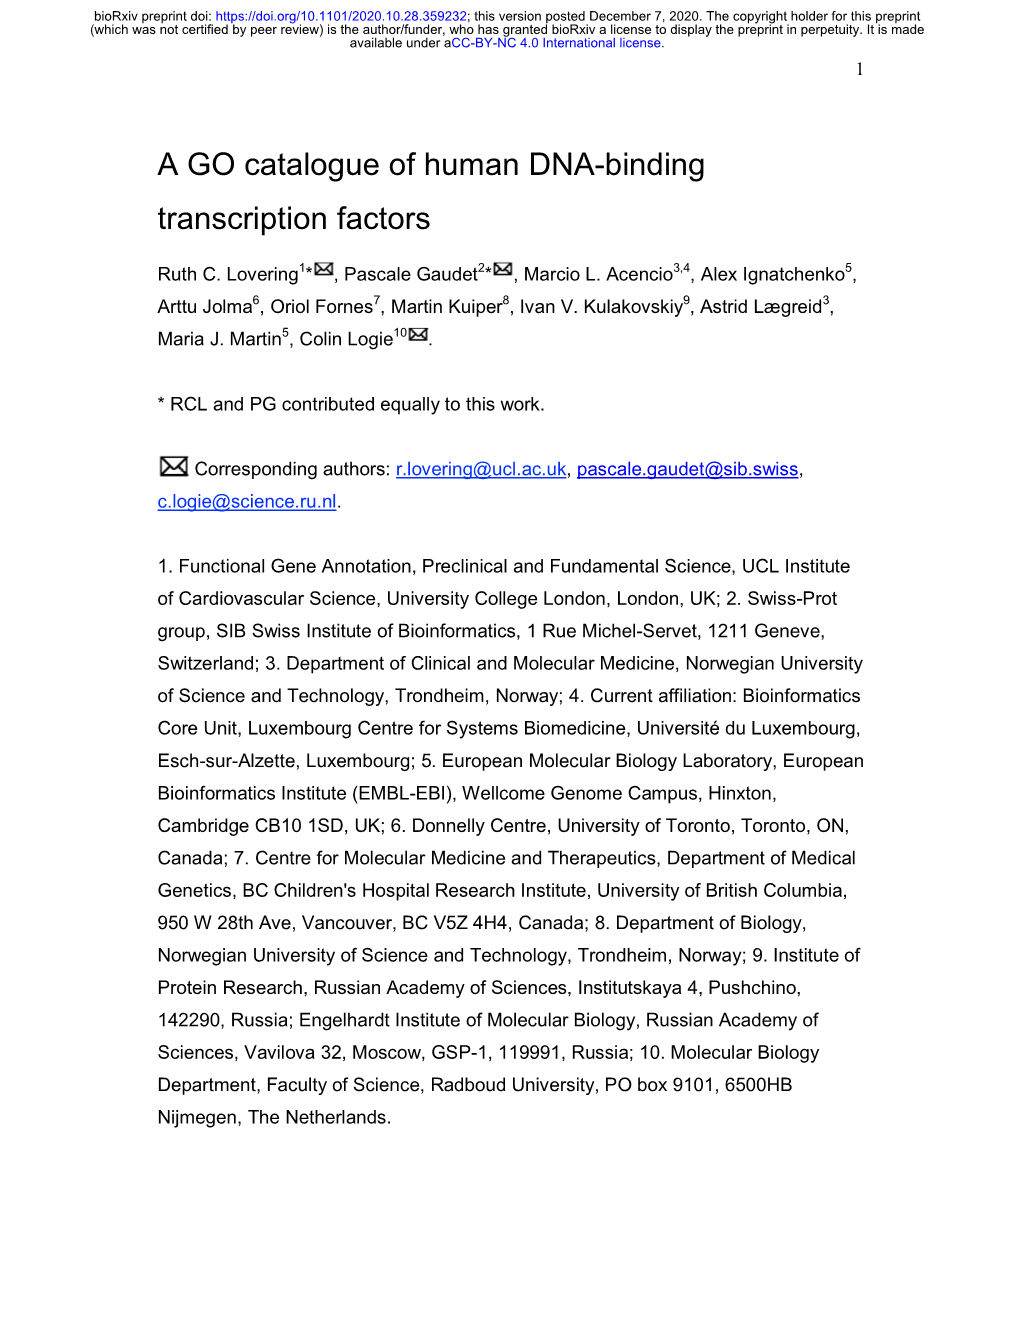 A GO Catalogue of Human DNA-Binding Transcription Factors